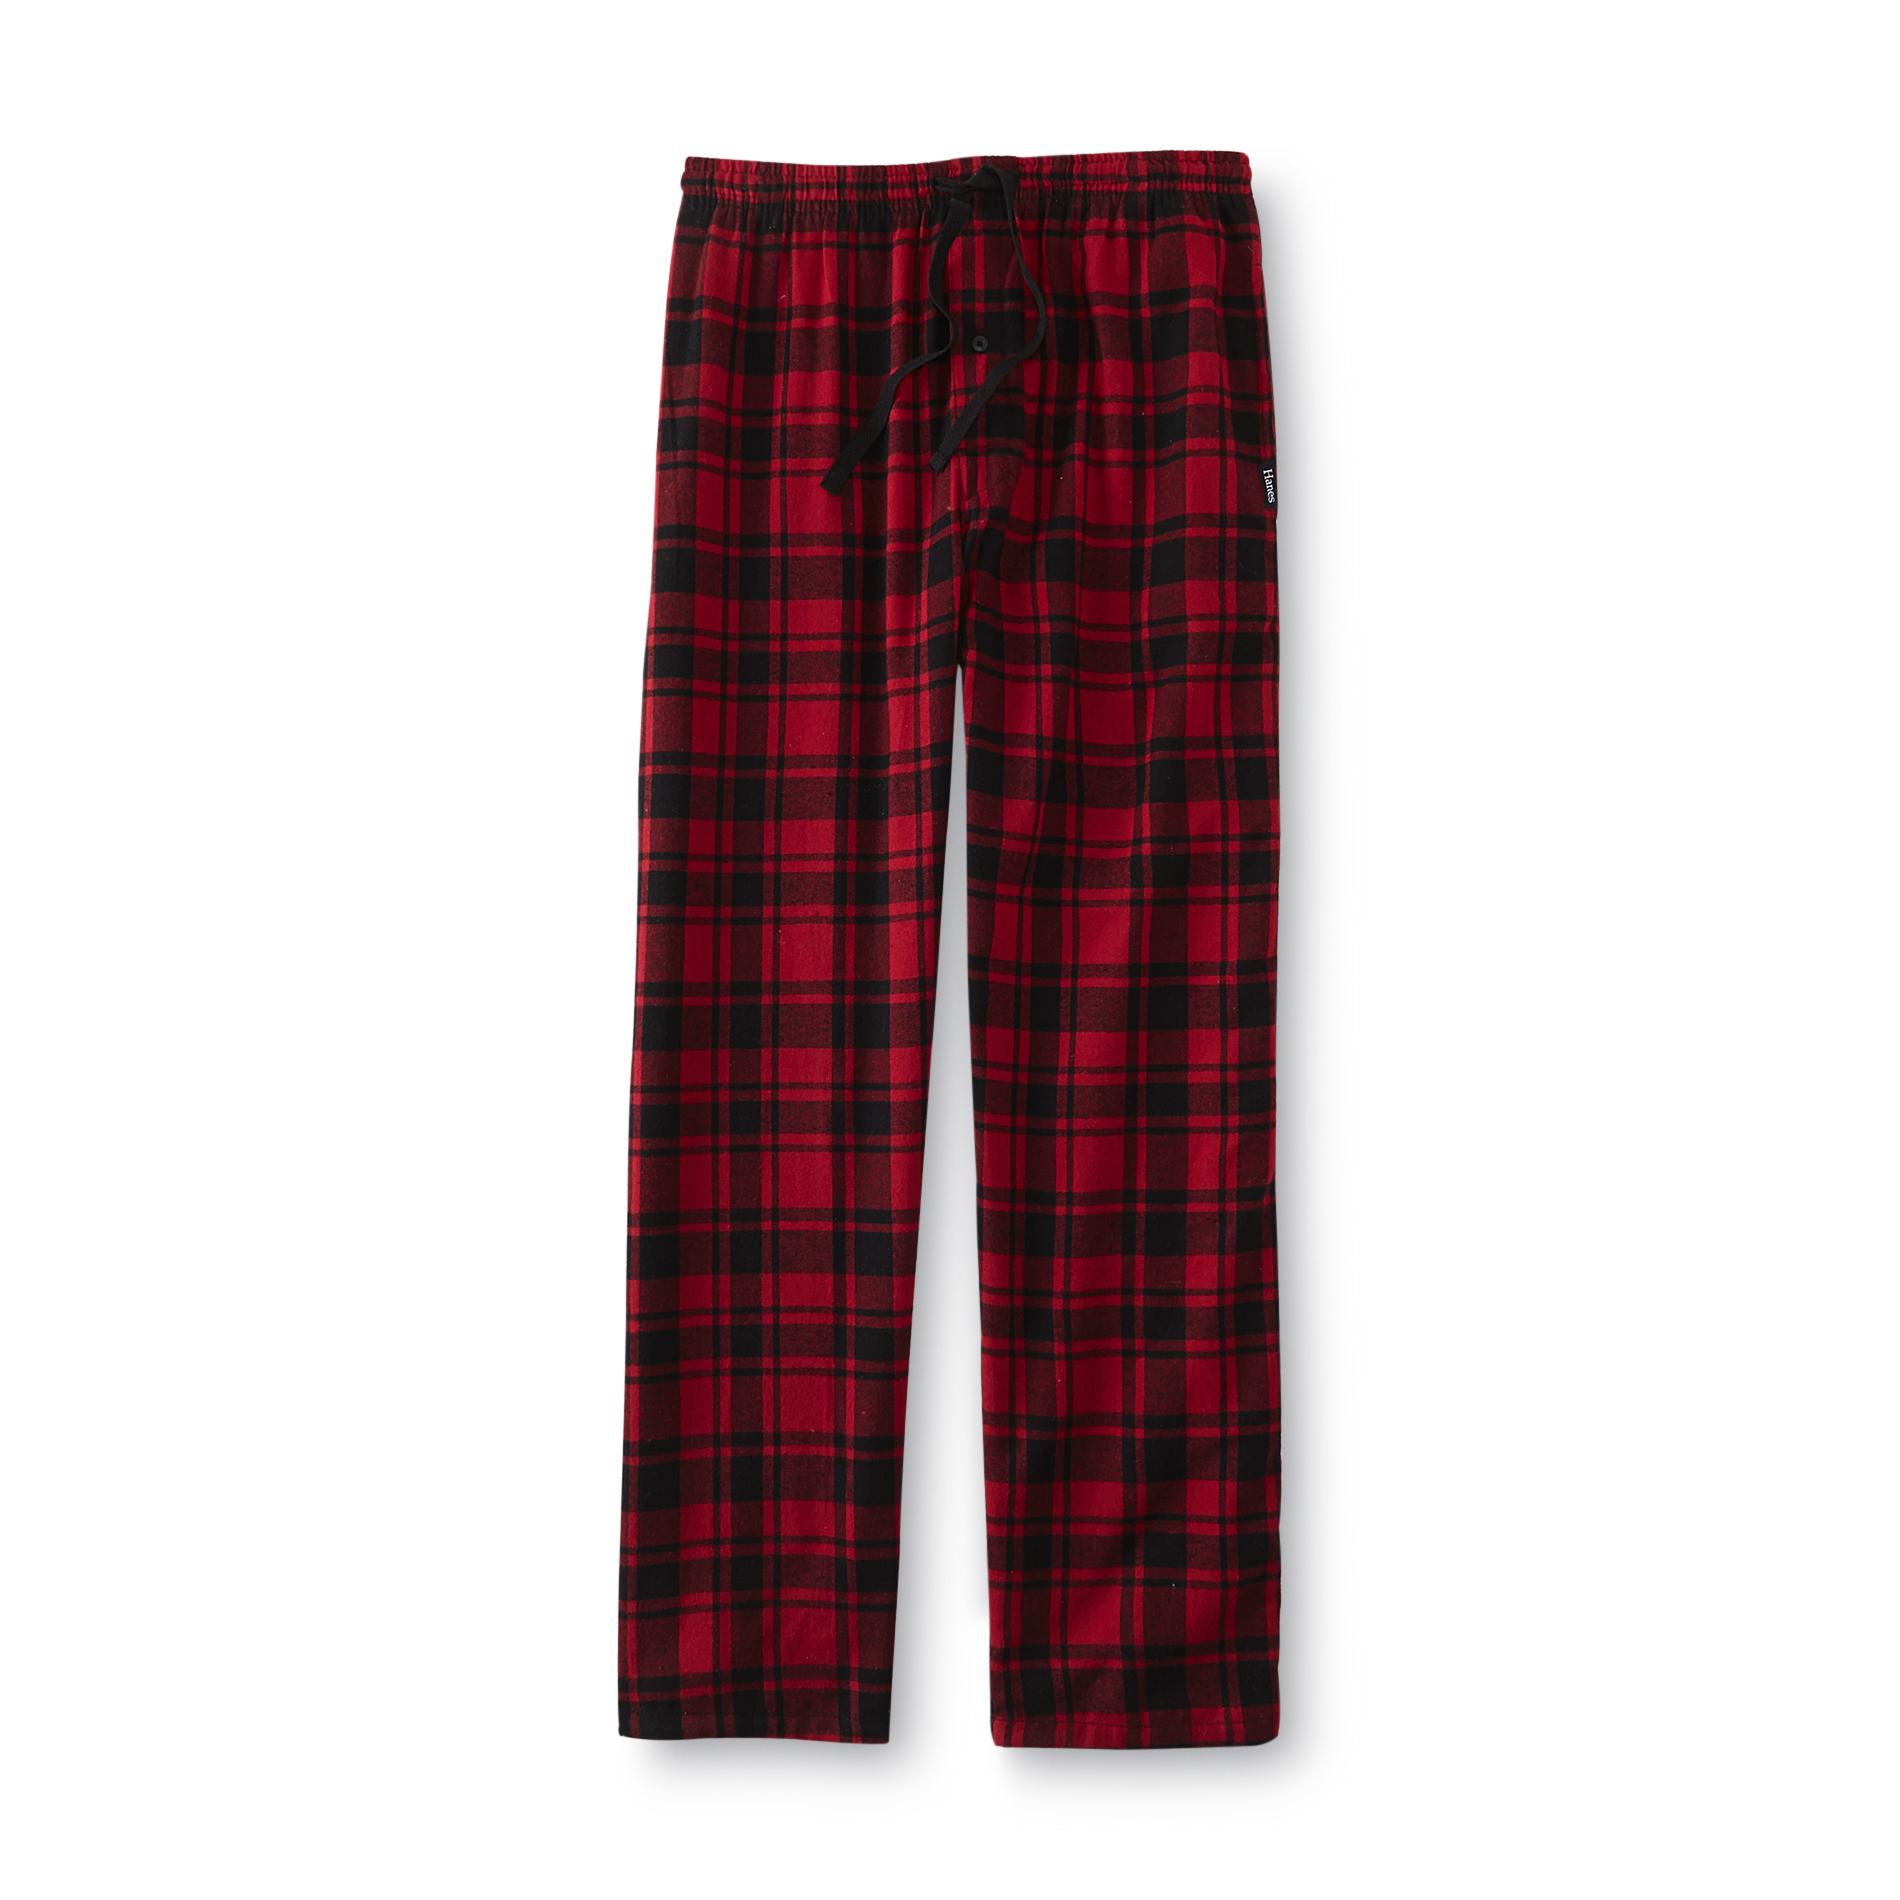 Hanes Men's Flannel Pajama Pants - Plaid | Shop Your Way: Online ...